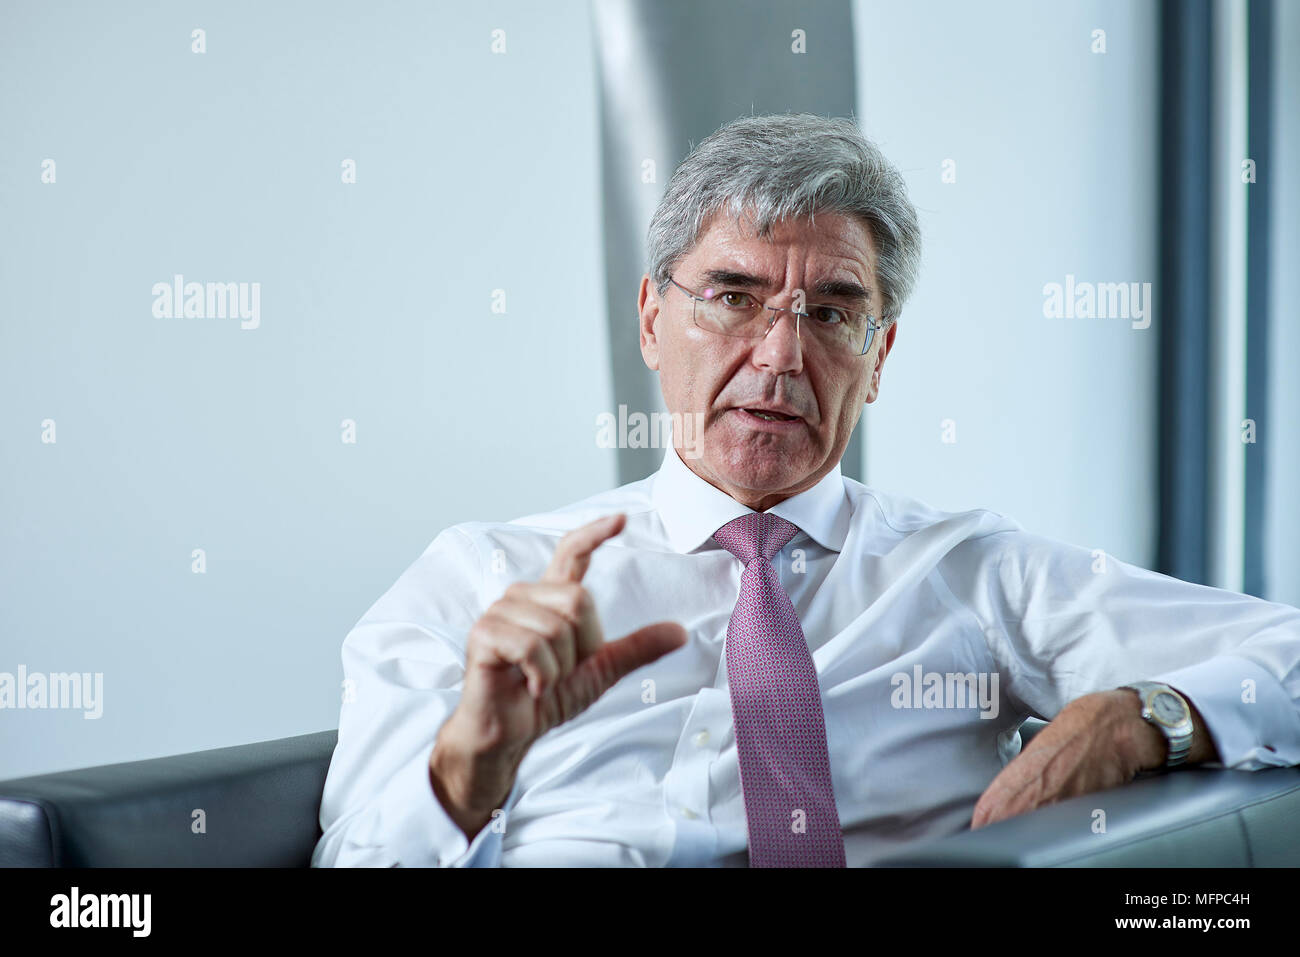 Joe Kaeser, directeur général de Siemens AG Banque D'Images